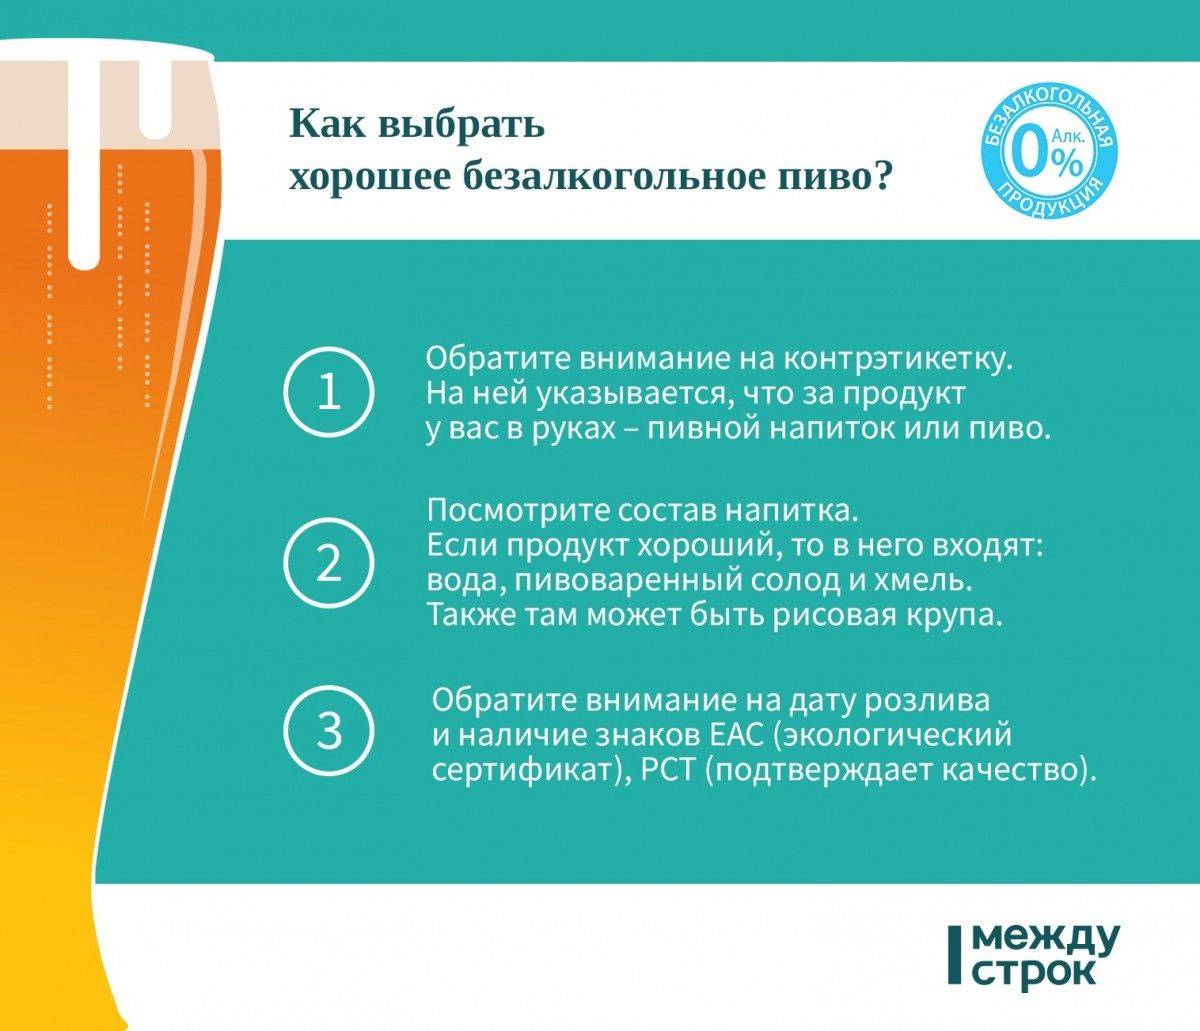 Употребление алкоголя при гв, можно ли пить и в каком количестве